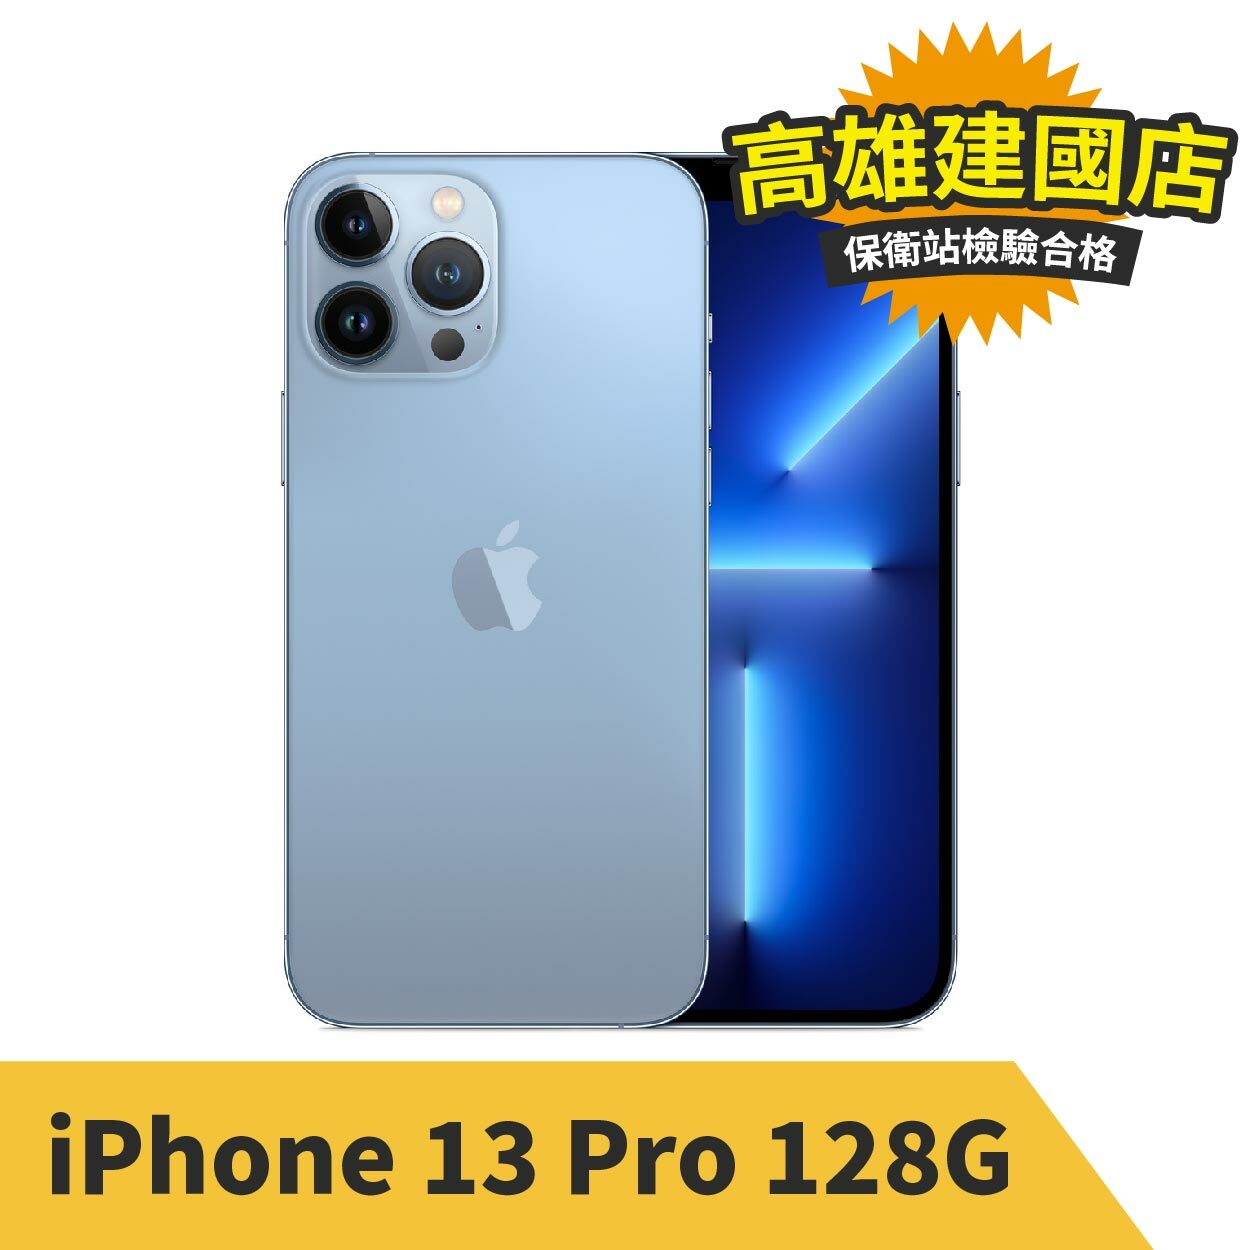 iPhone 13 Pro 128G 天峰藍色